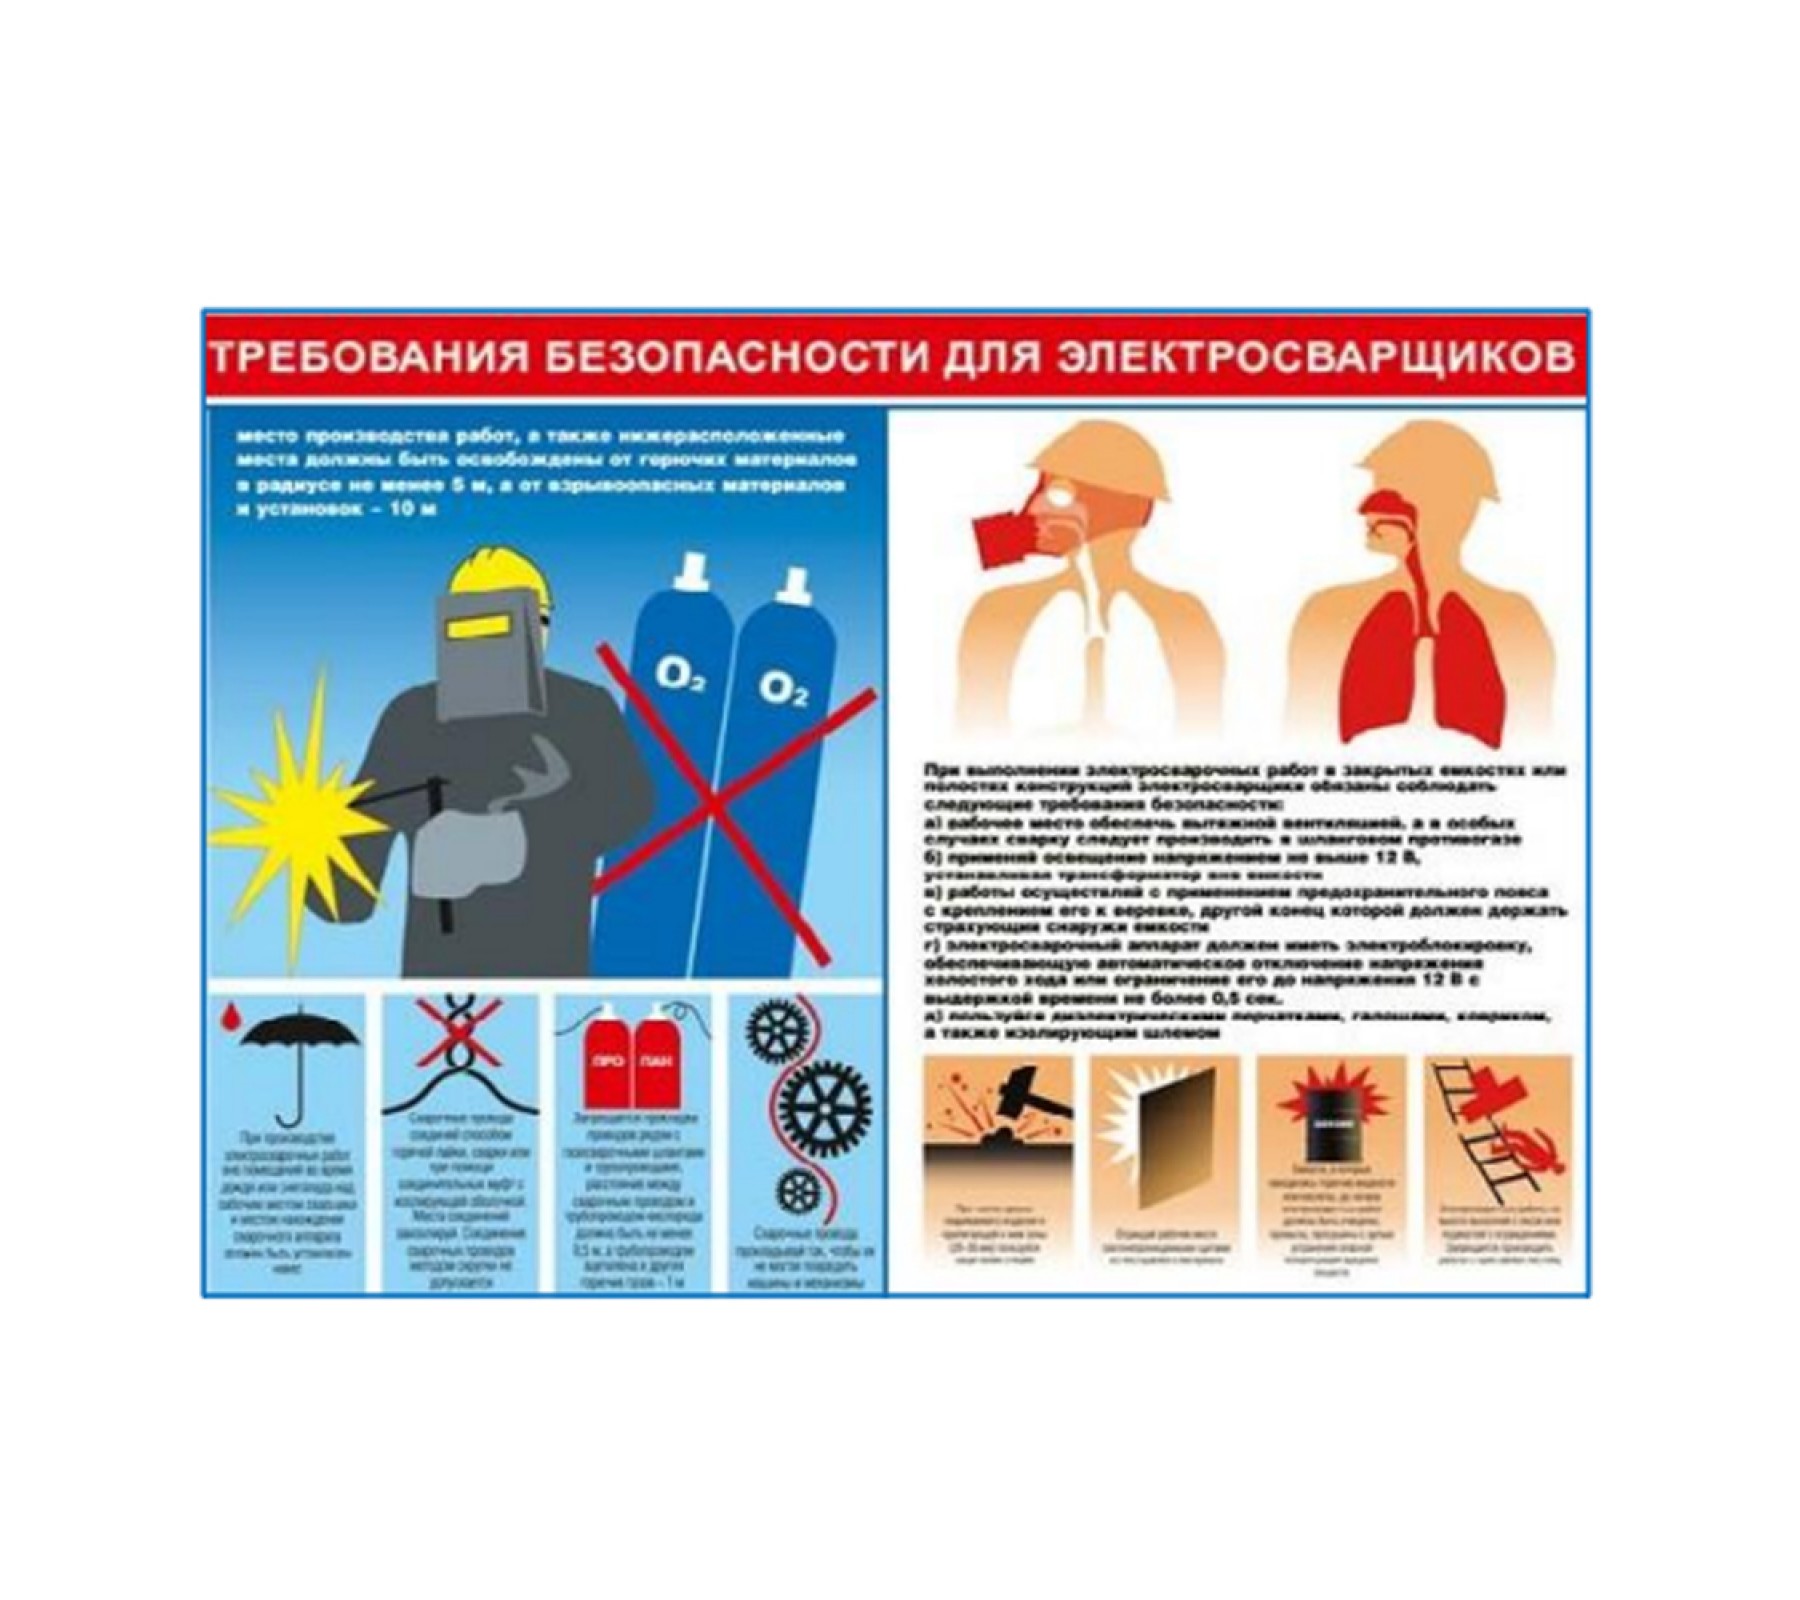 Плакат "Требования безопасности для электросварщиков"